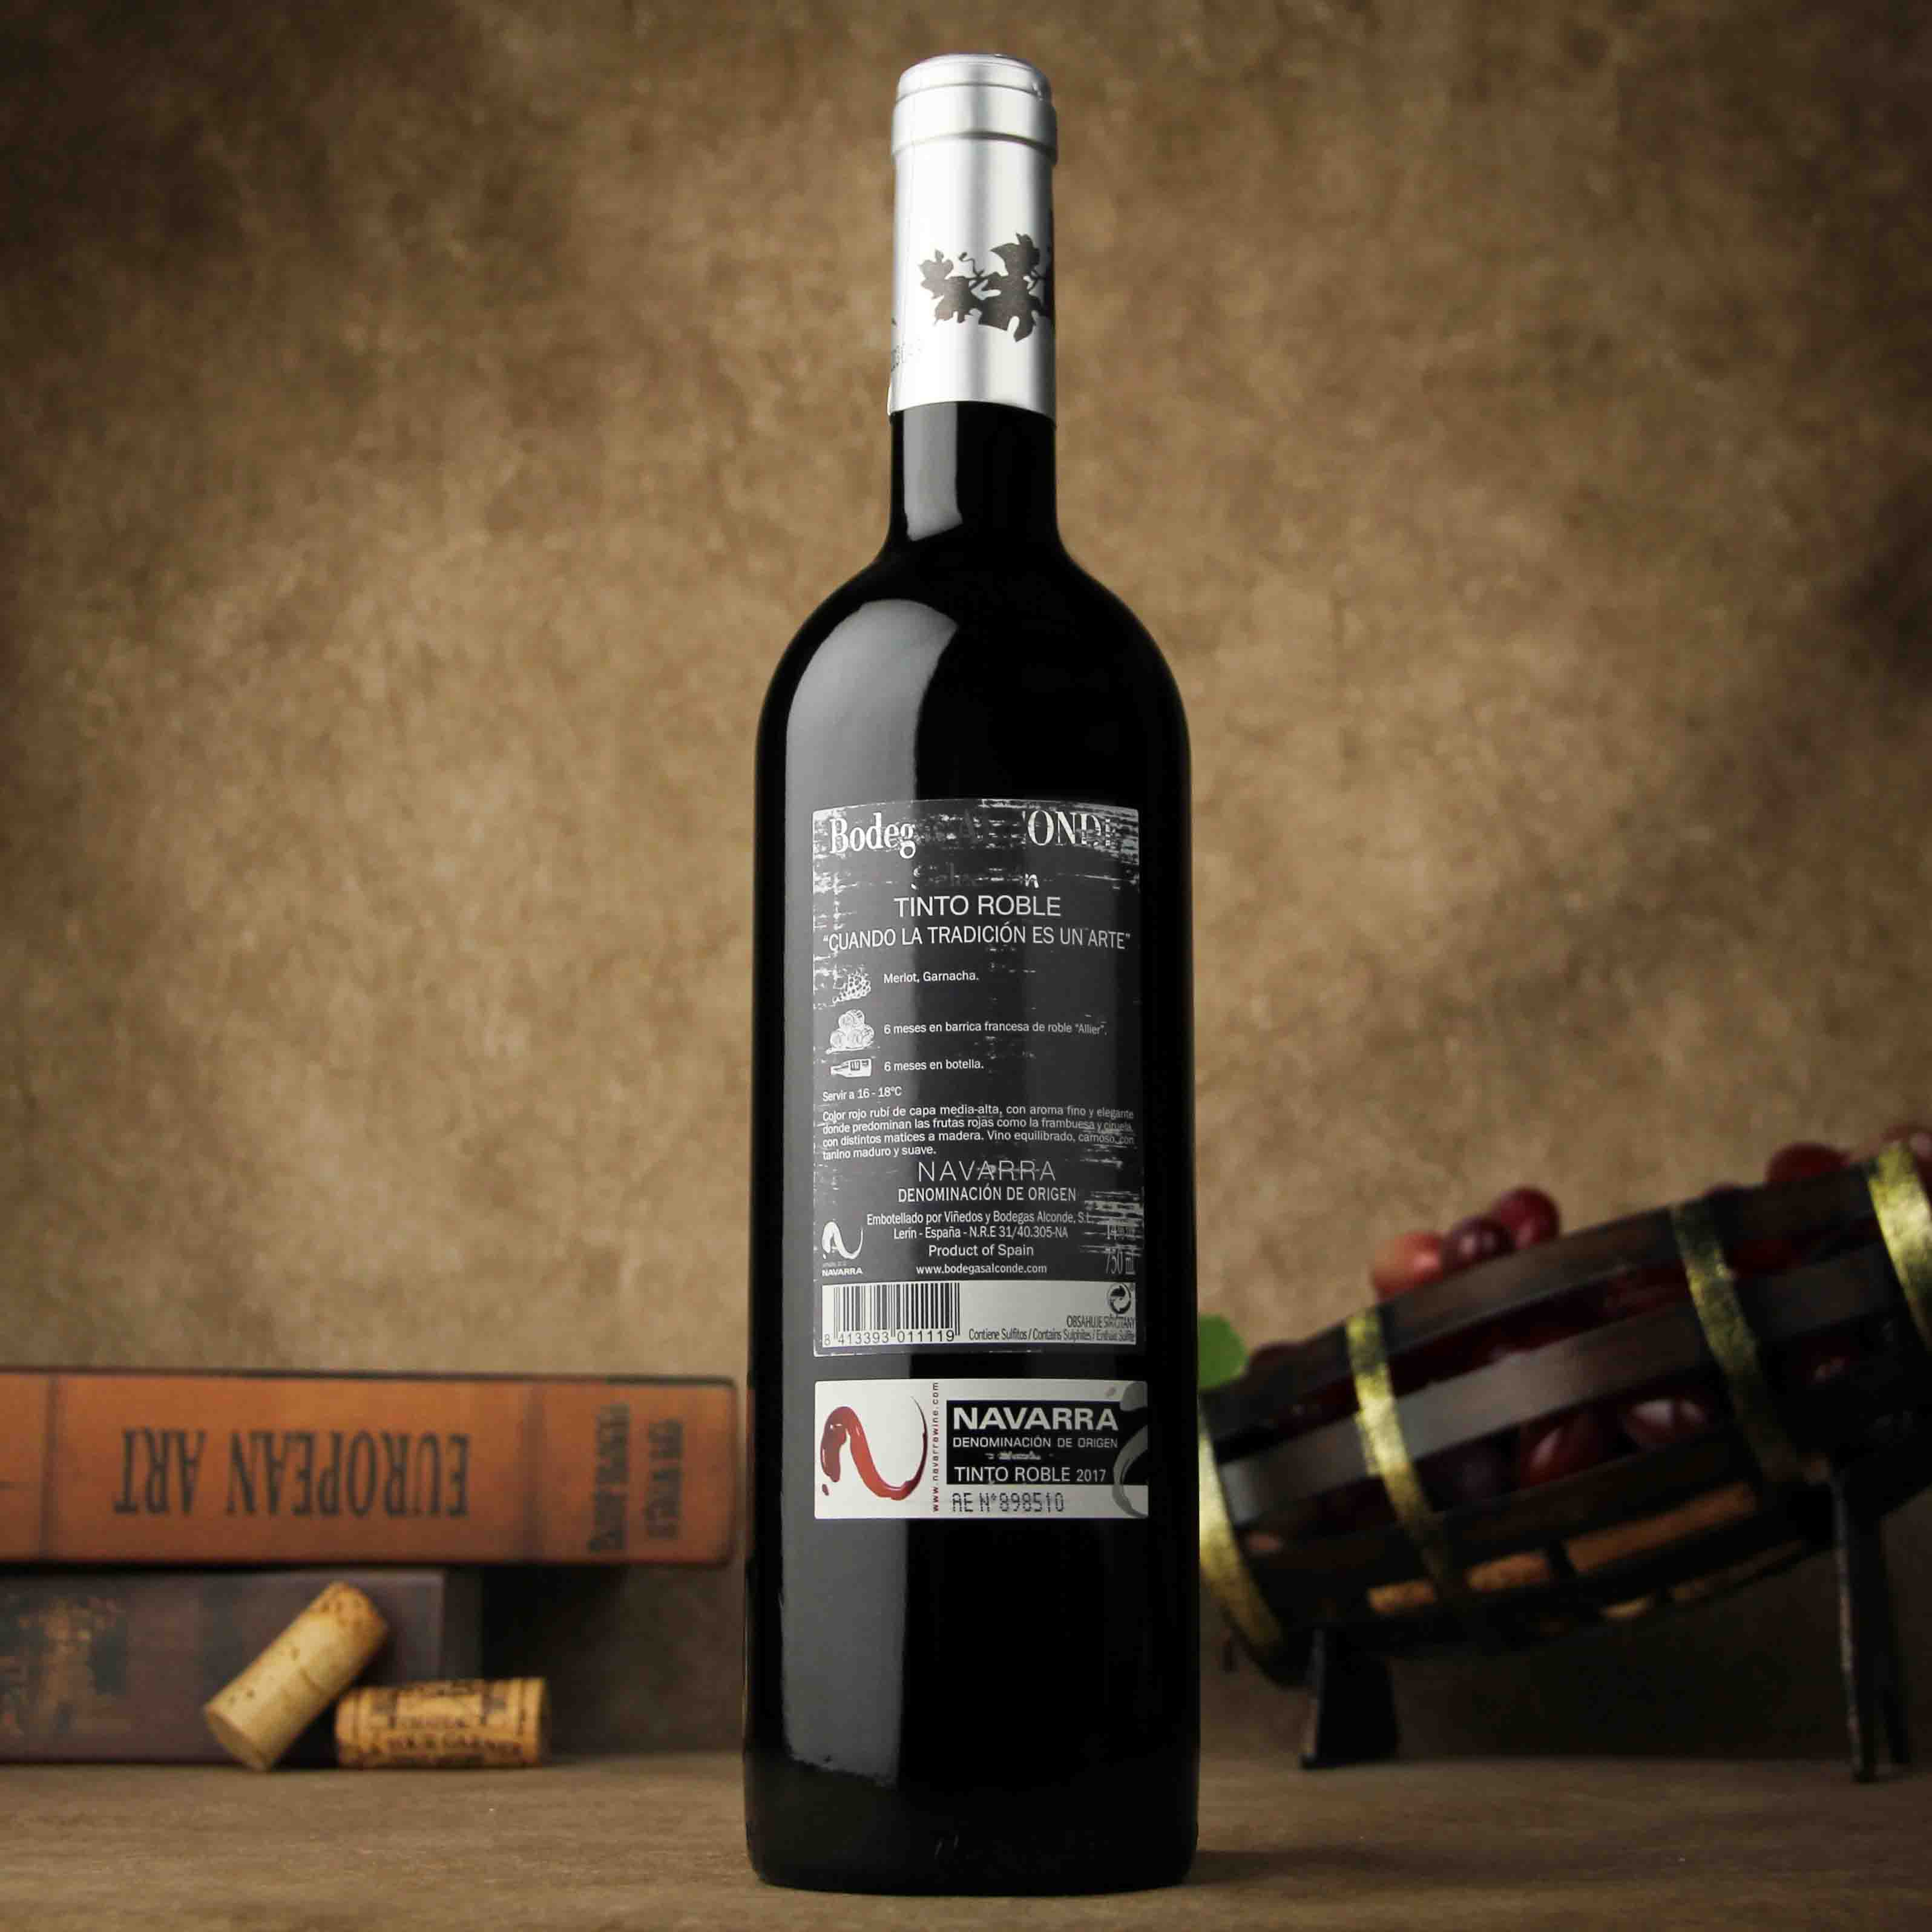 西班牙纳瓦拉阿尔康德酒庄爱琴迪精选橡木桶干红葡萄酒